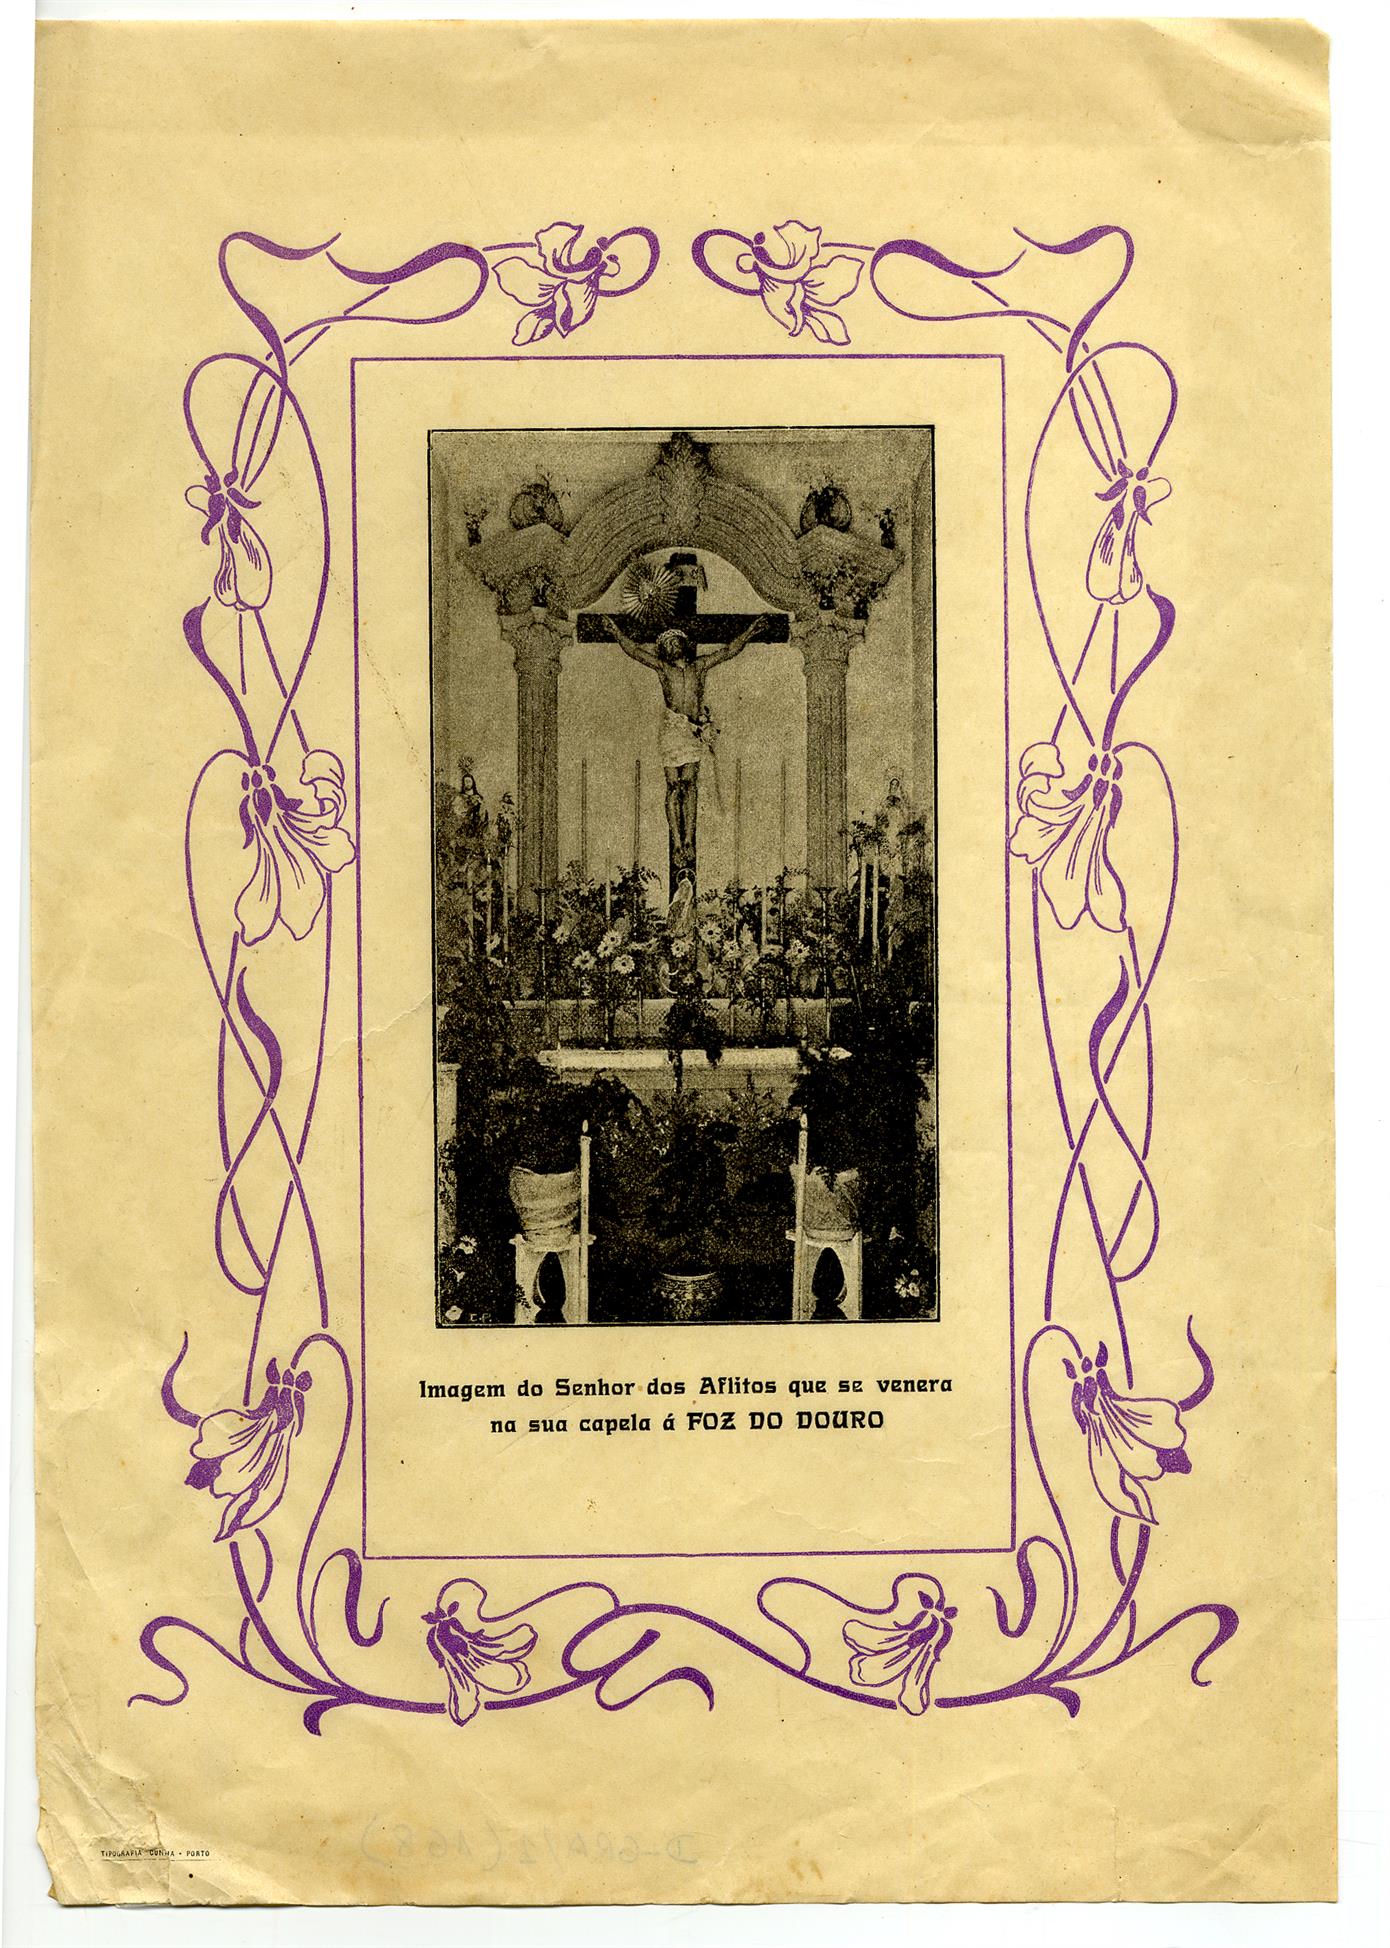 Imagem do Senhor dos Aflitos que se venera na sua capela, à Foz do Douro